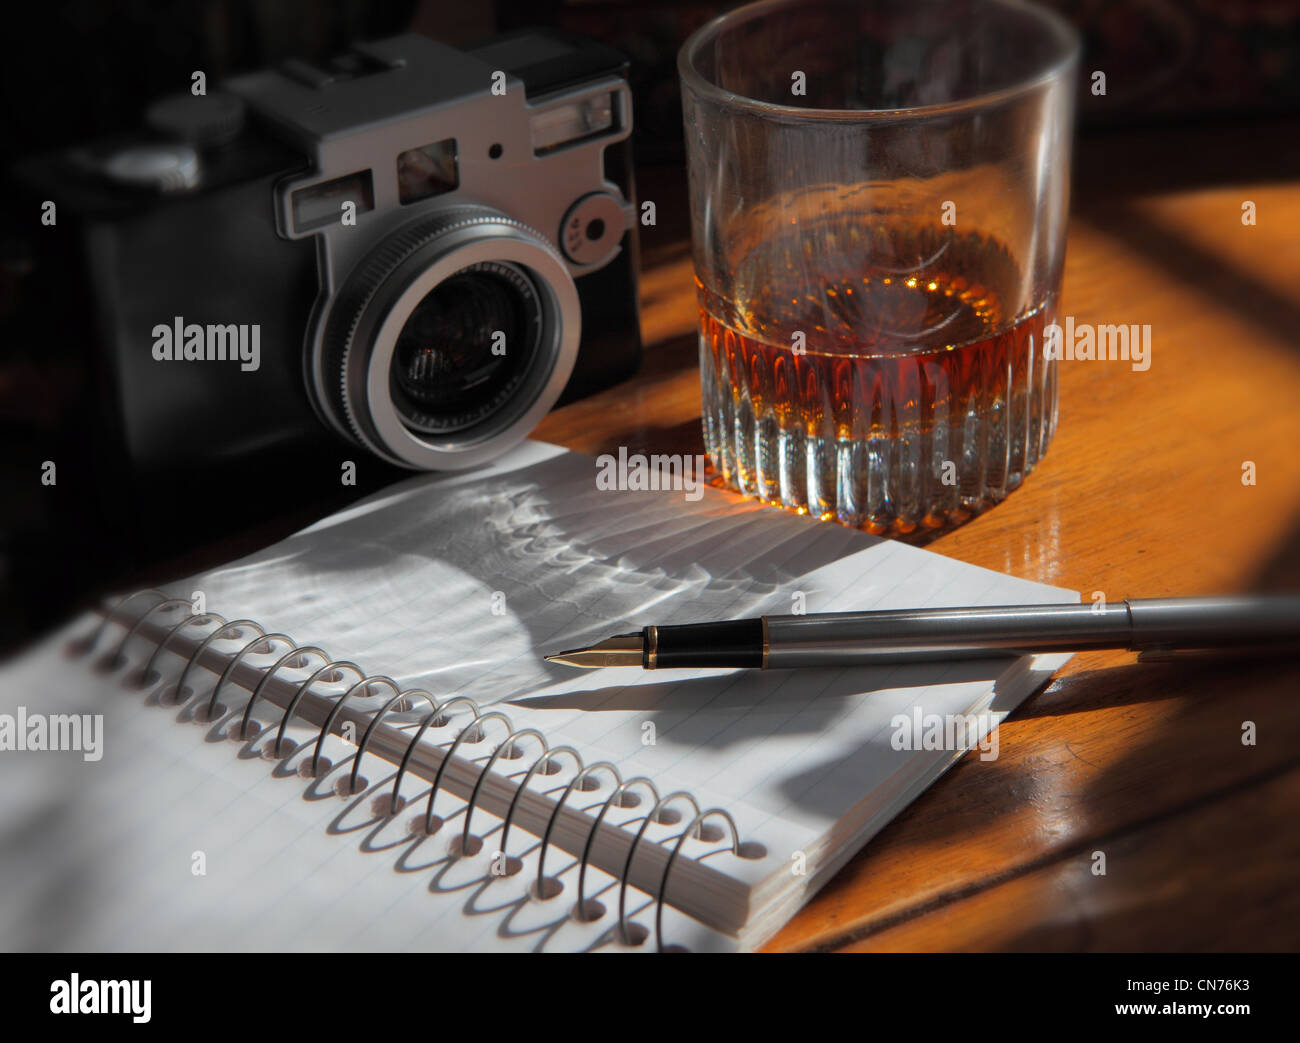 Un stylo posé sur une page de la revue, un appareil photo et un verre d'alcool sur une table en bois Banque D'Images